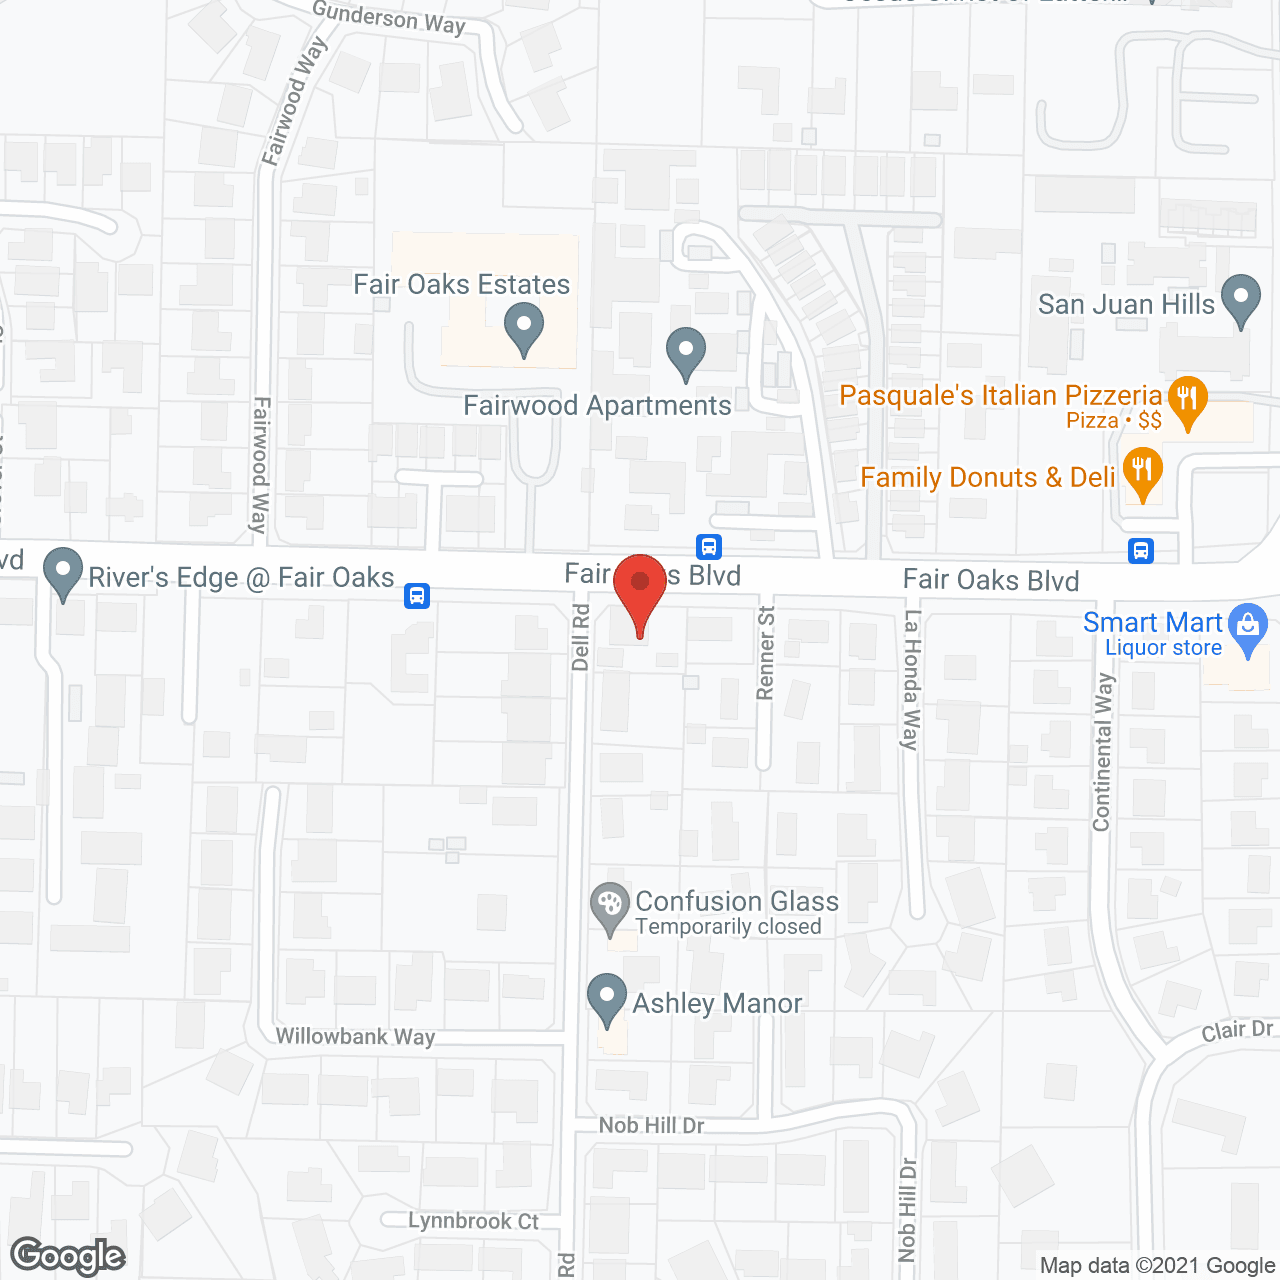 Dell Villa Care Home in google map